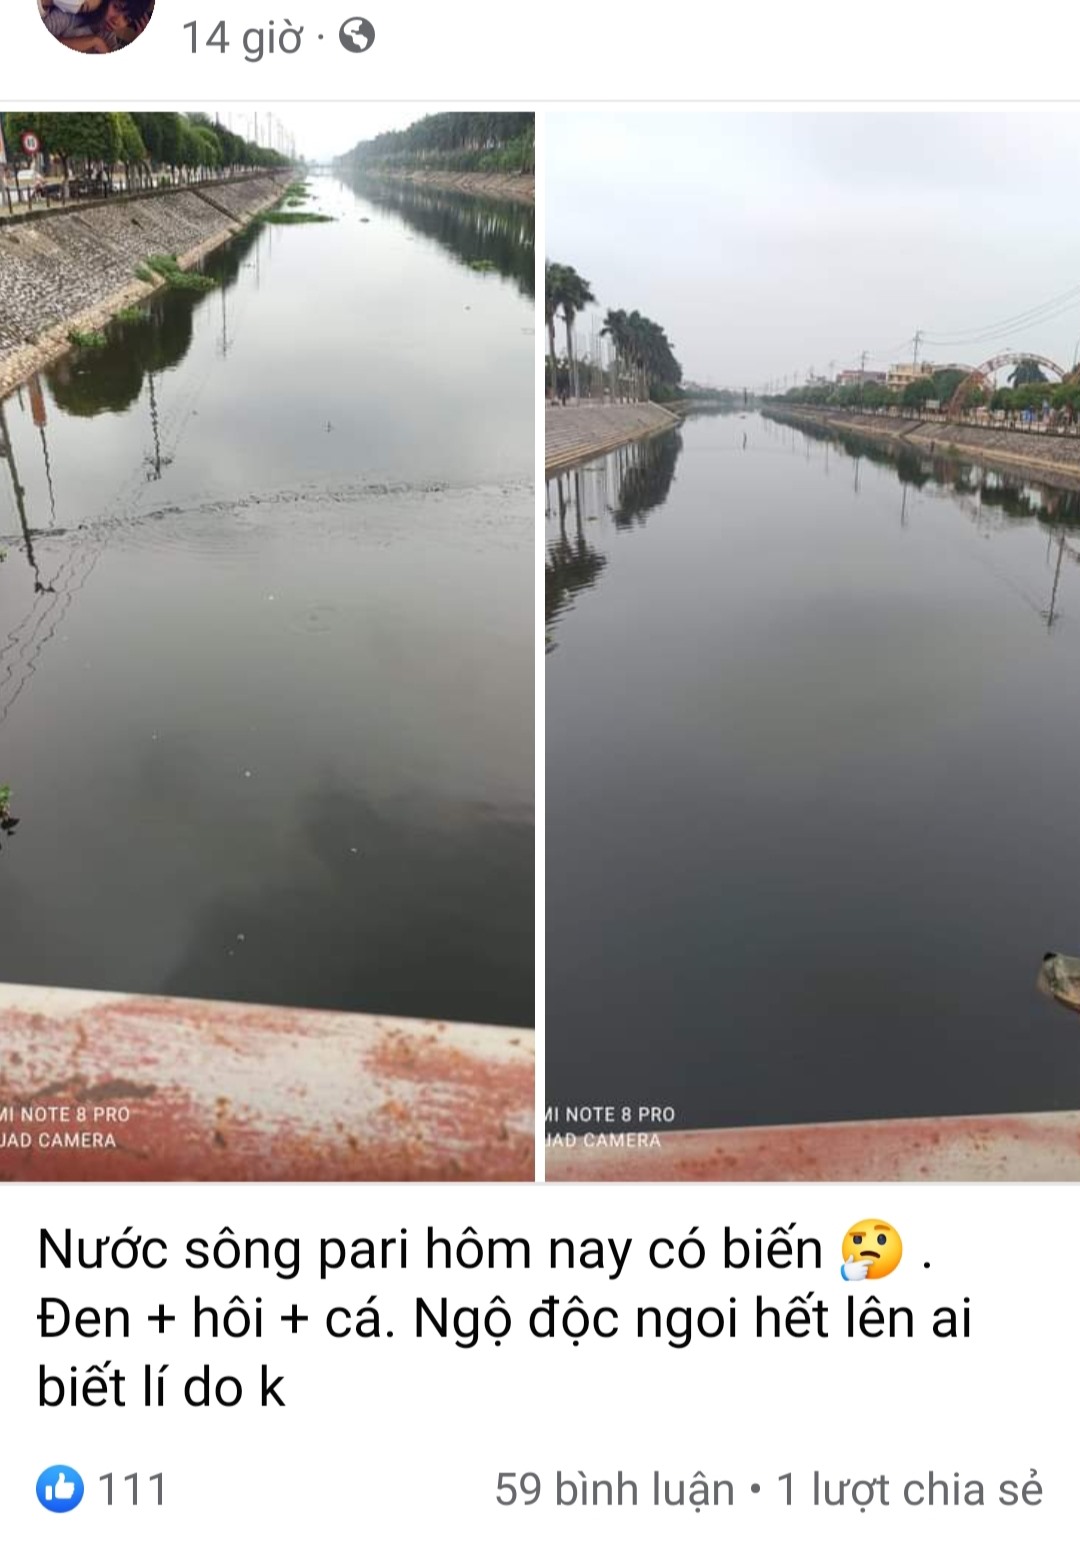 Sông Kiến Giang đoạn qua thành phố Thái Bình ô nhiễm nghiêm trọng